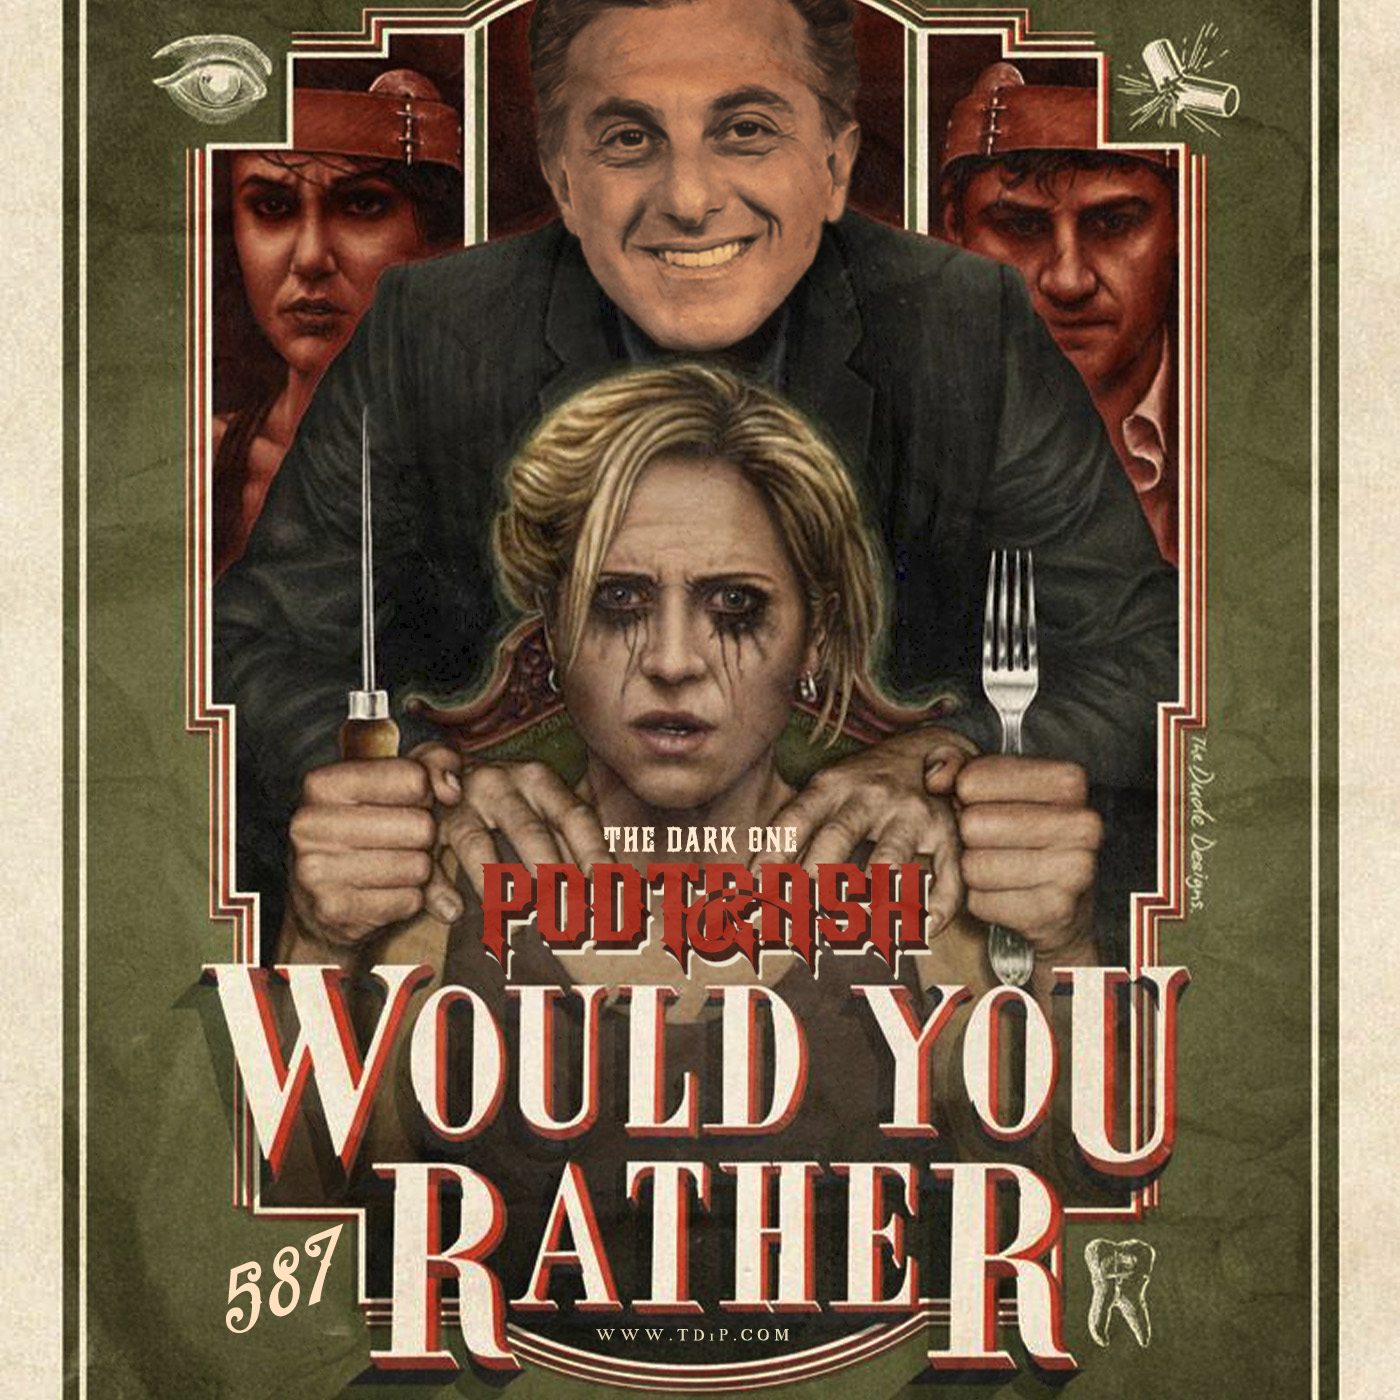 Podtrash 587 – Would You Rather – Podtrash